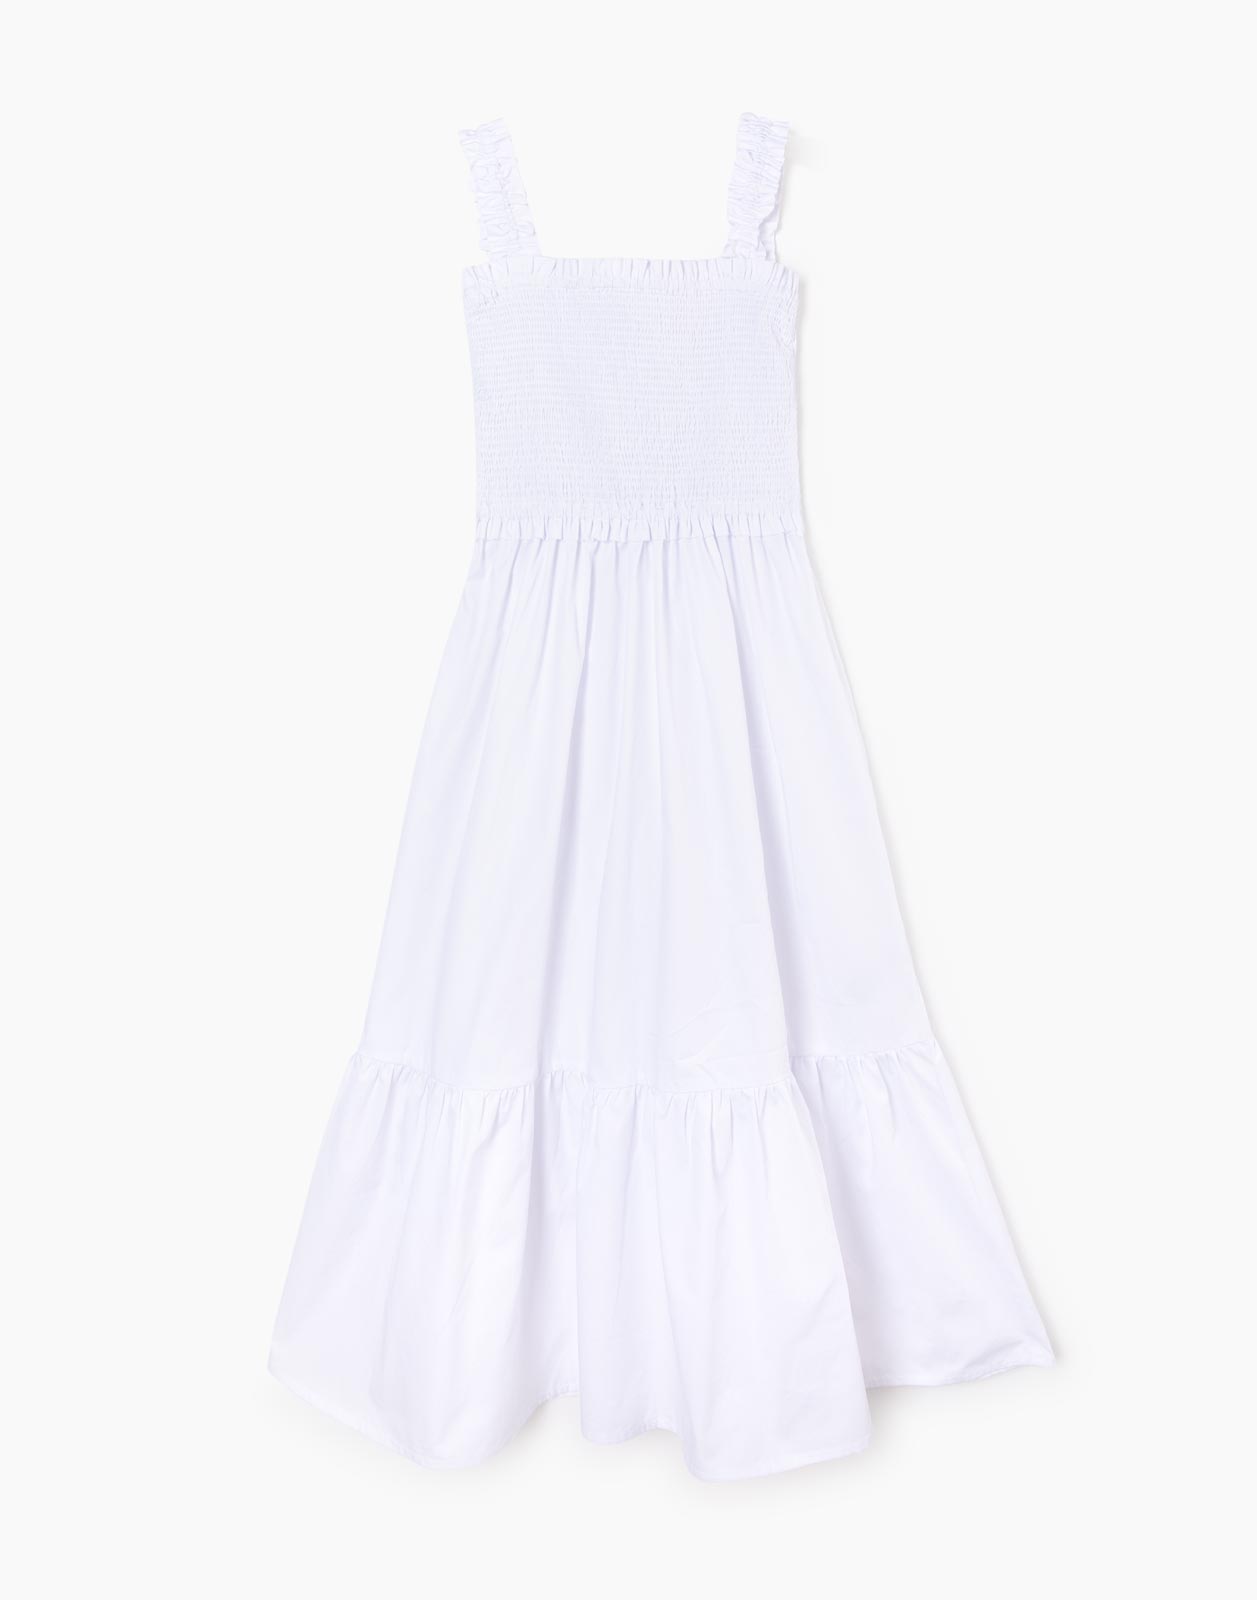 Платье женское Gloria Jeans GDR027150 белое S